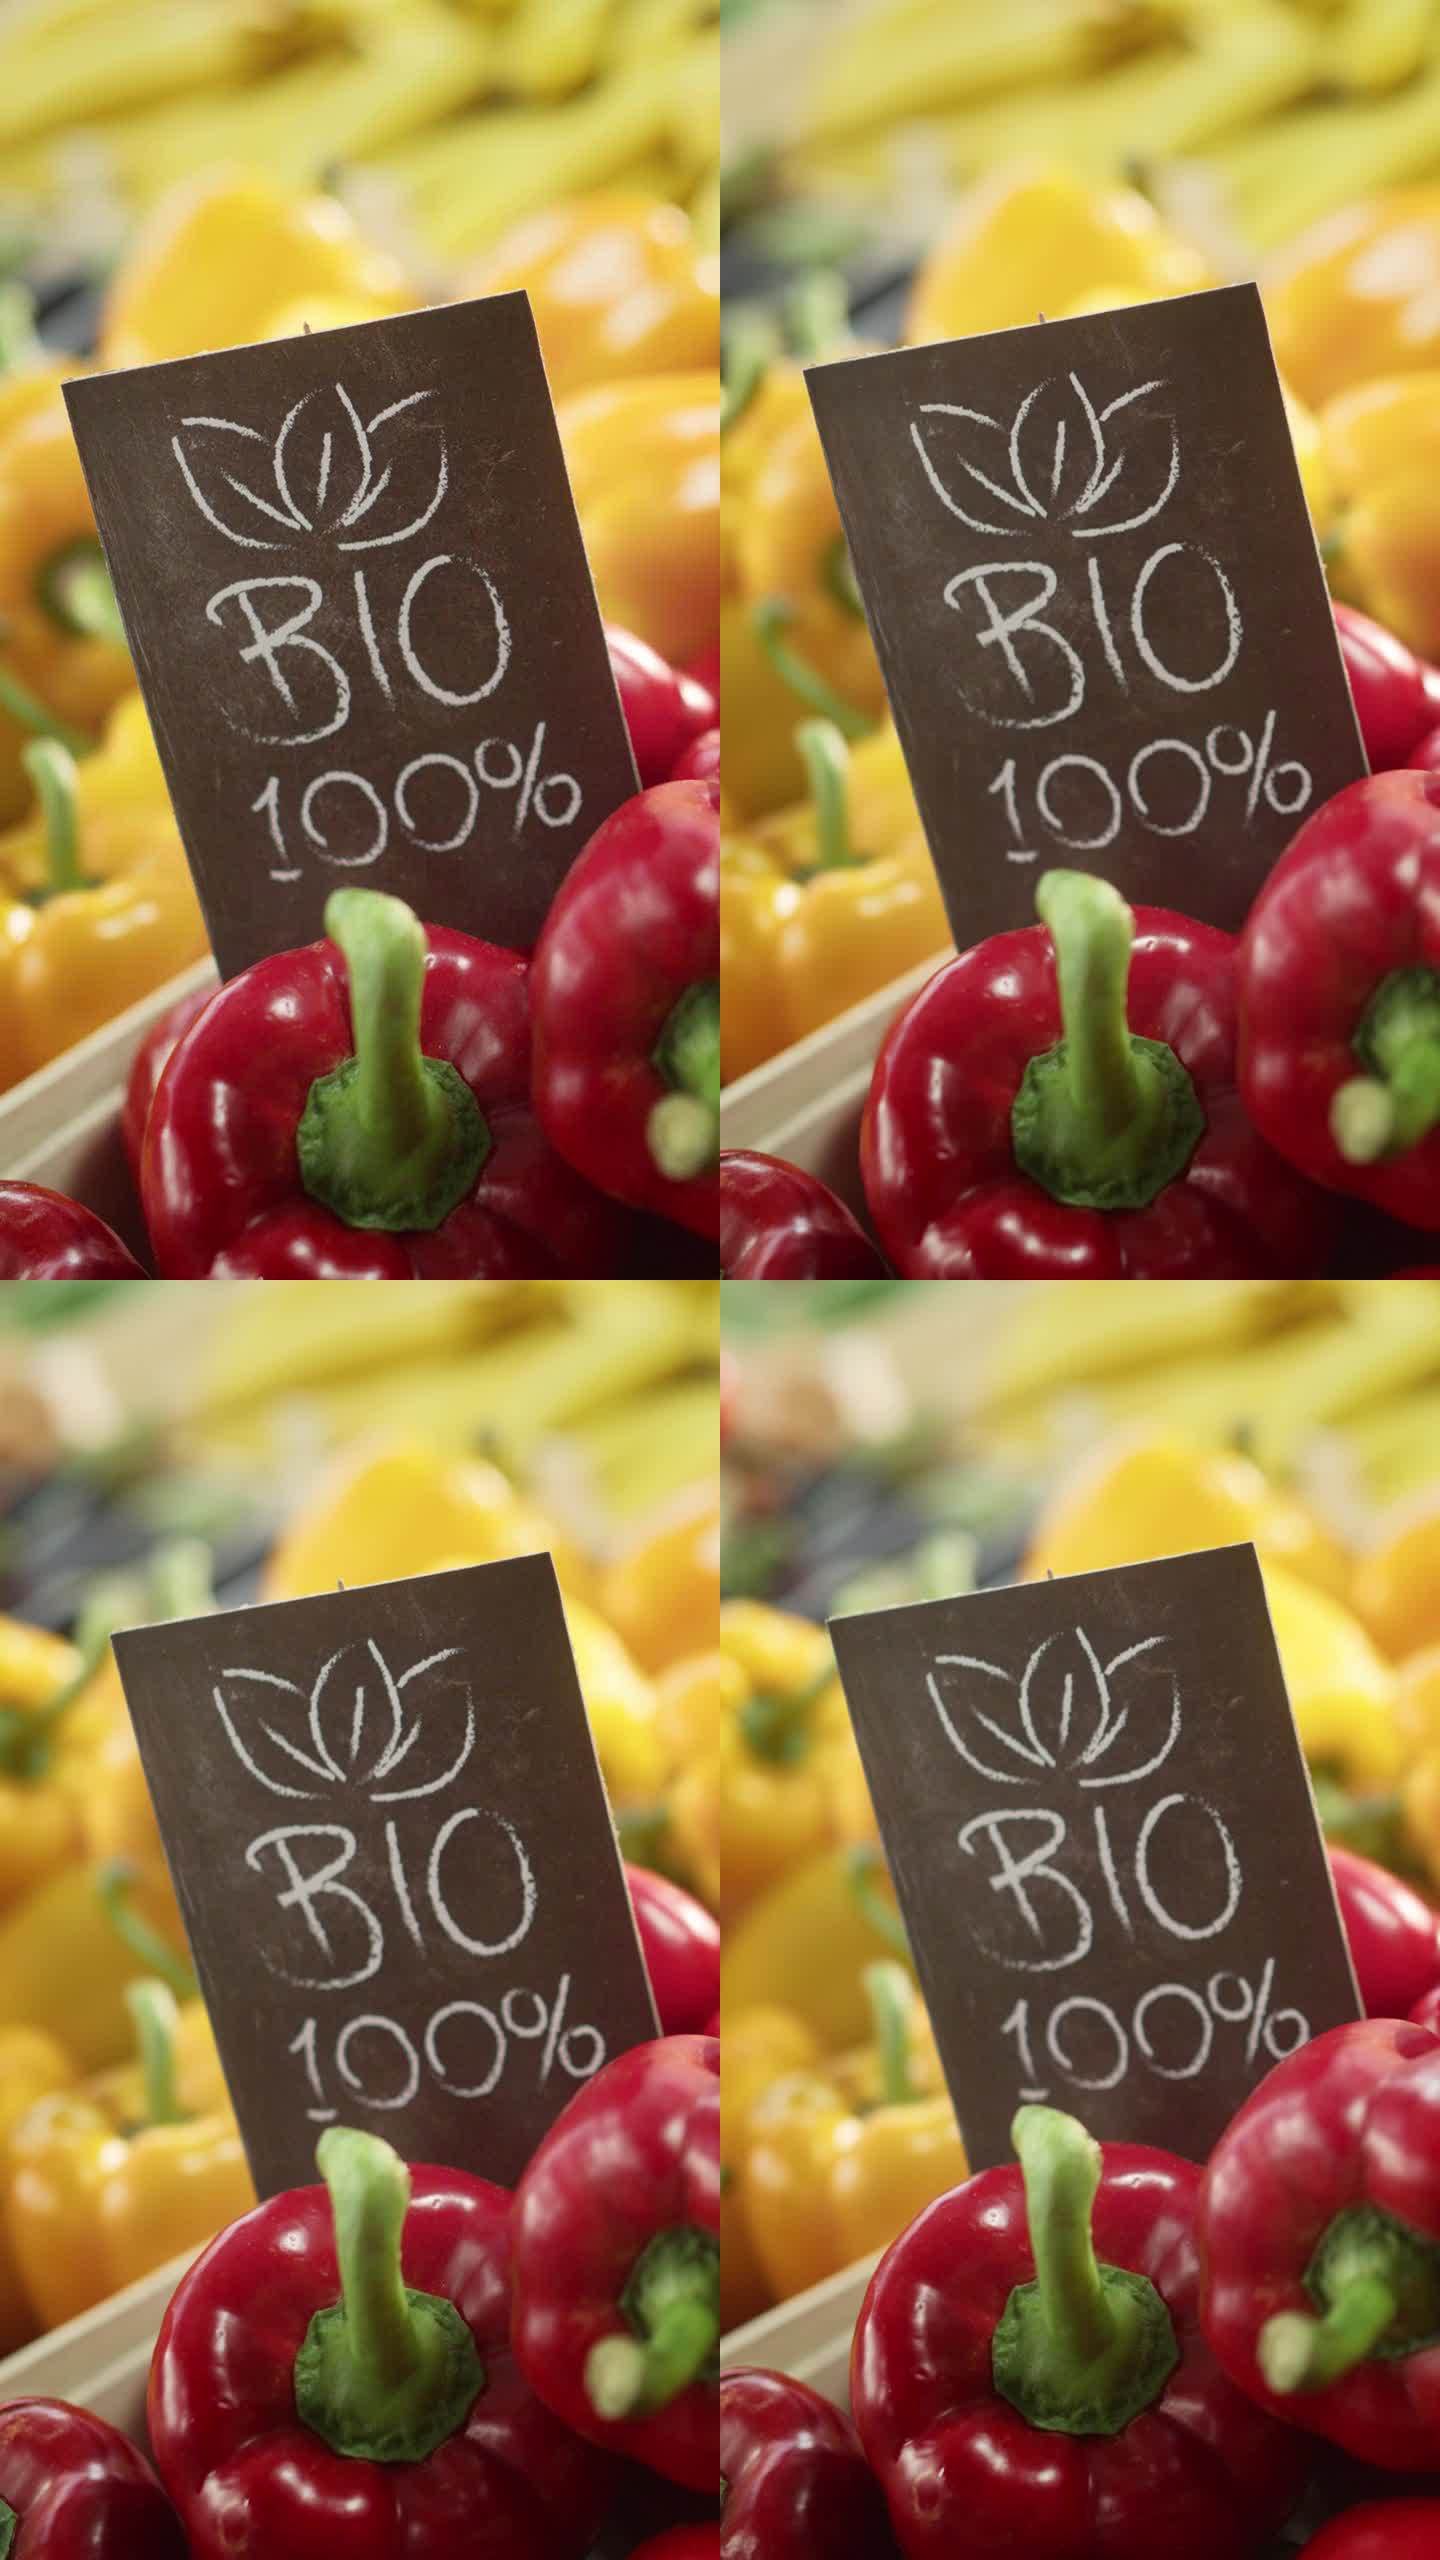 垂直屏幕:100%生物标志食品摊上新鲜的红和黄色有机甜椒来自当地农场。户外农贸市场的有机水果和蔬菜没